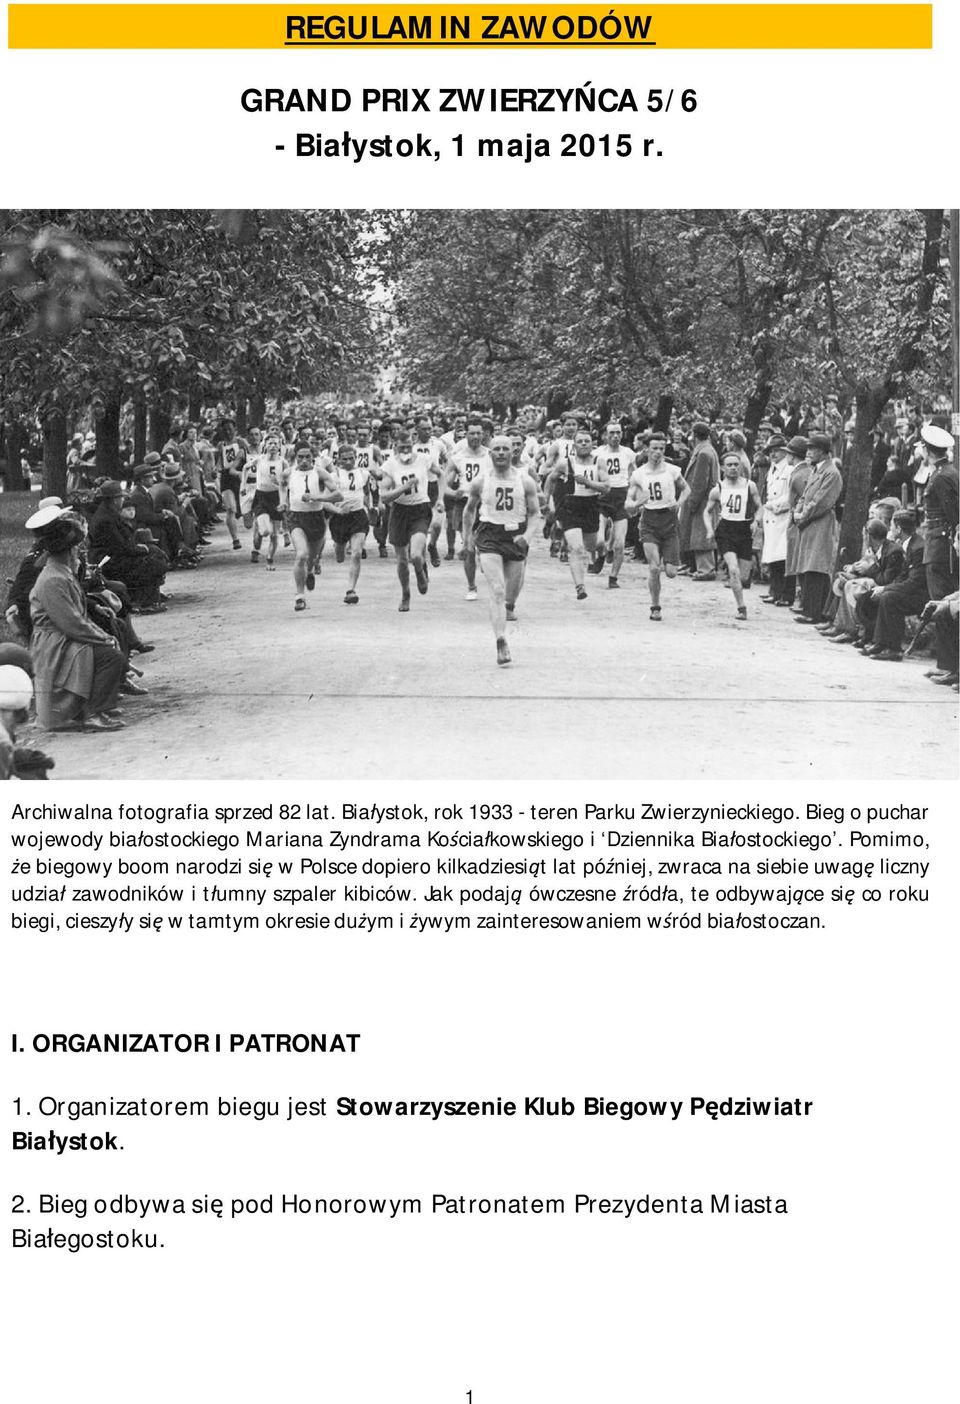 Pomimo, że biegowy boom narodzi się w Polsce dopiero kilkadziesiąt lat później, zwraca na siebie uwagę liczny udział zawodników i tłumny szpaler kibiców.